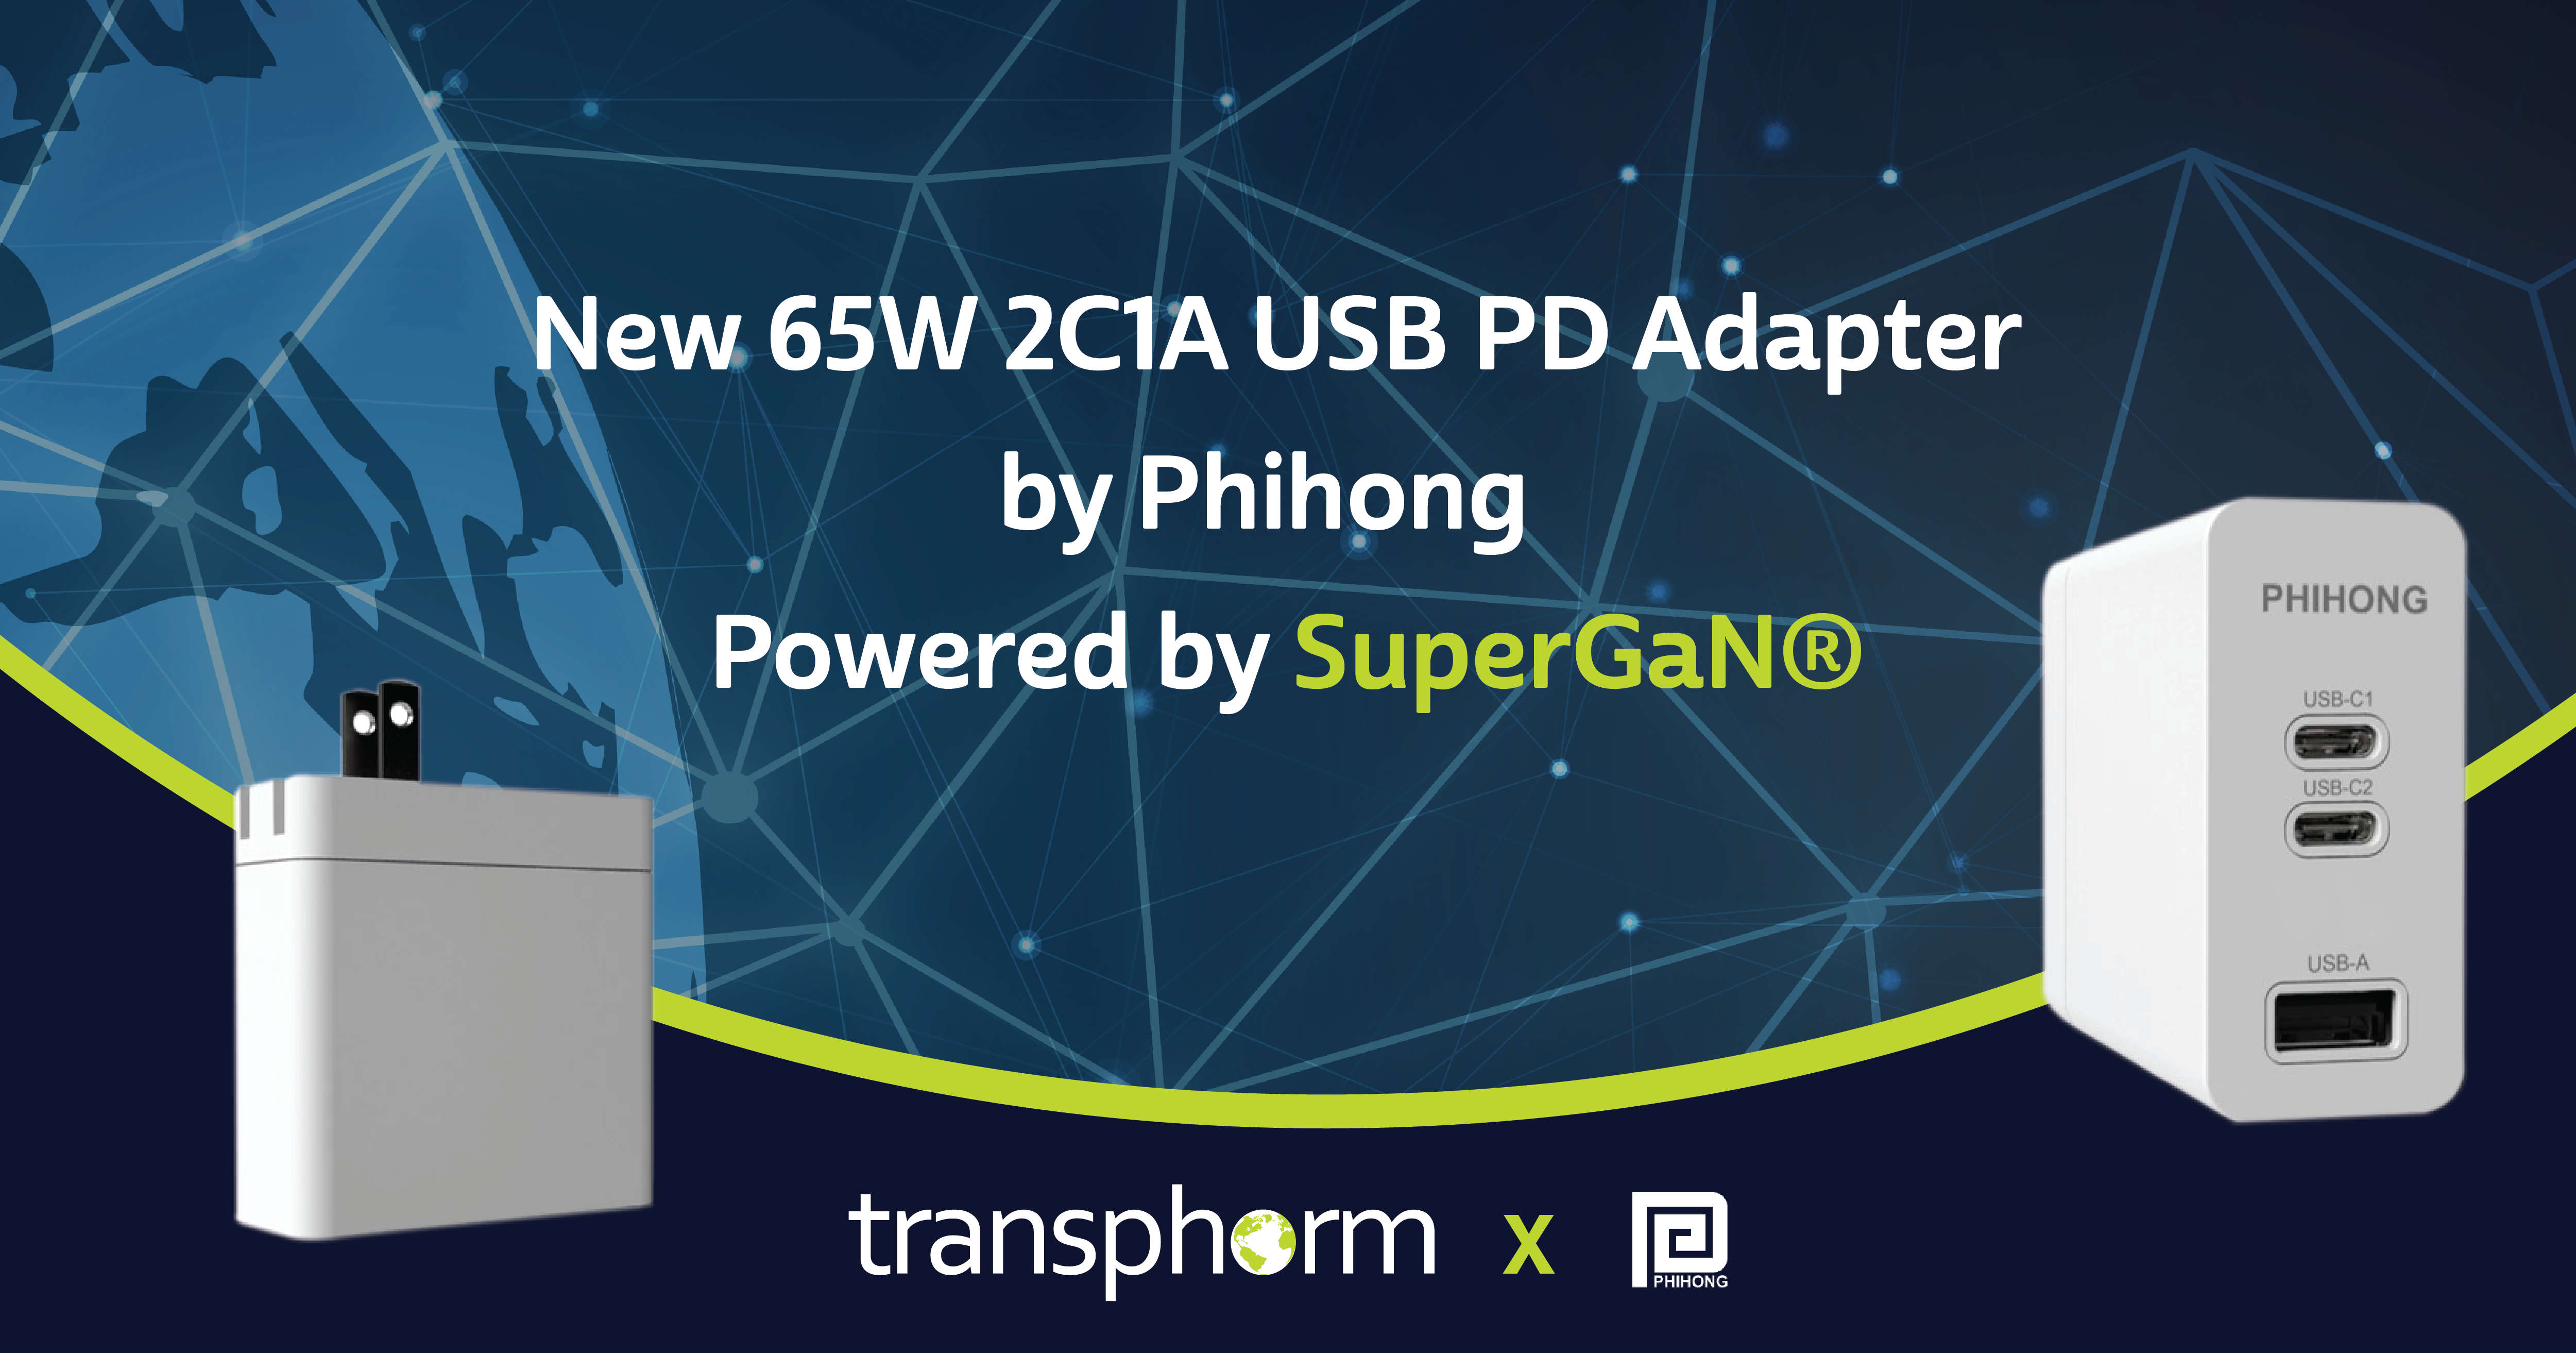 飞宏新推出的65W 2C1A USB PD适配器采用Transphorm的氮化镓技术